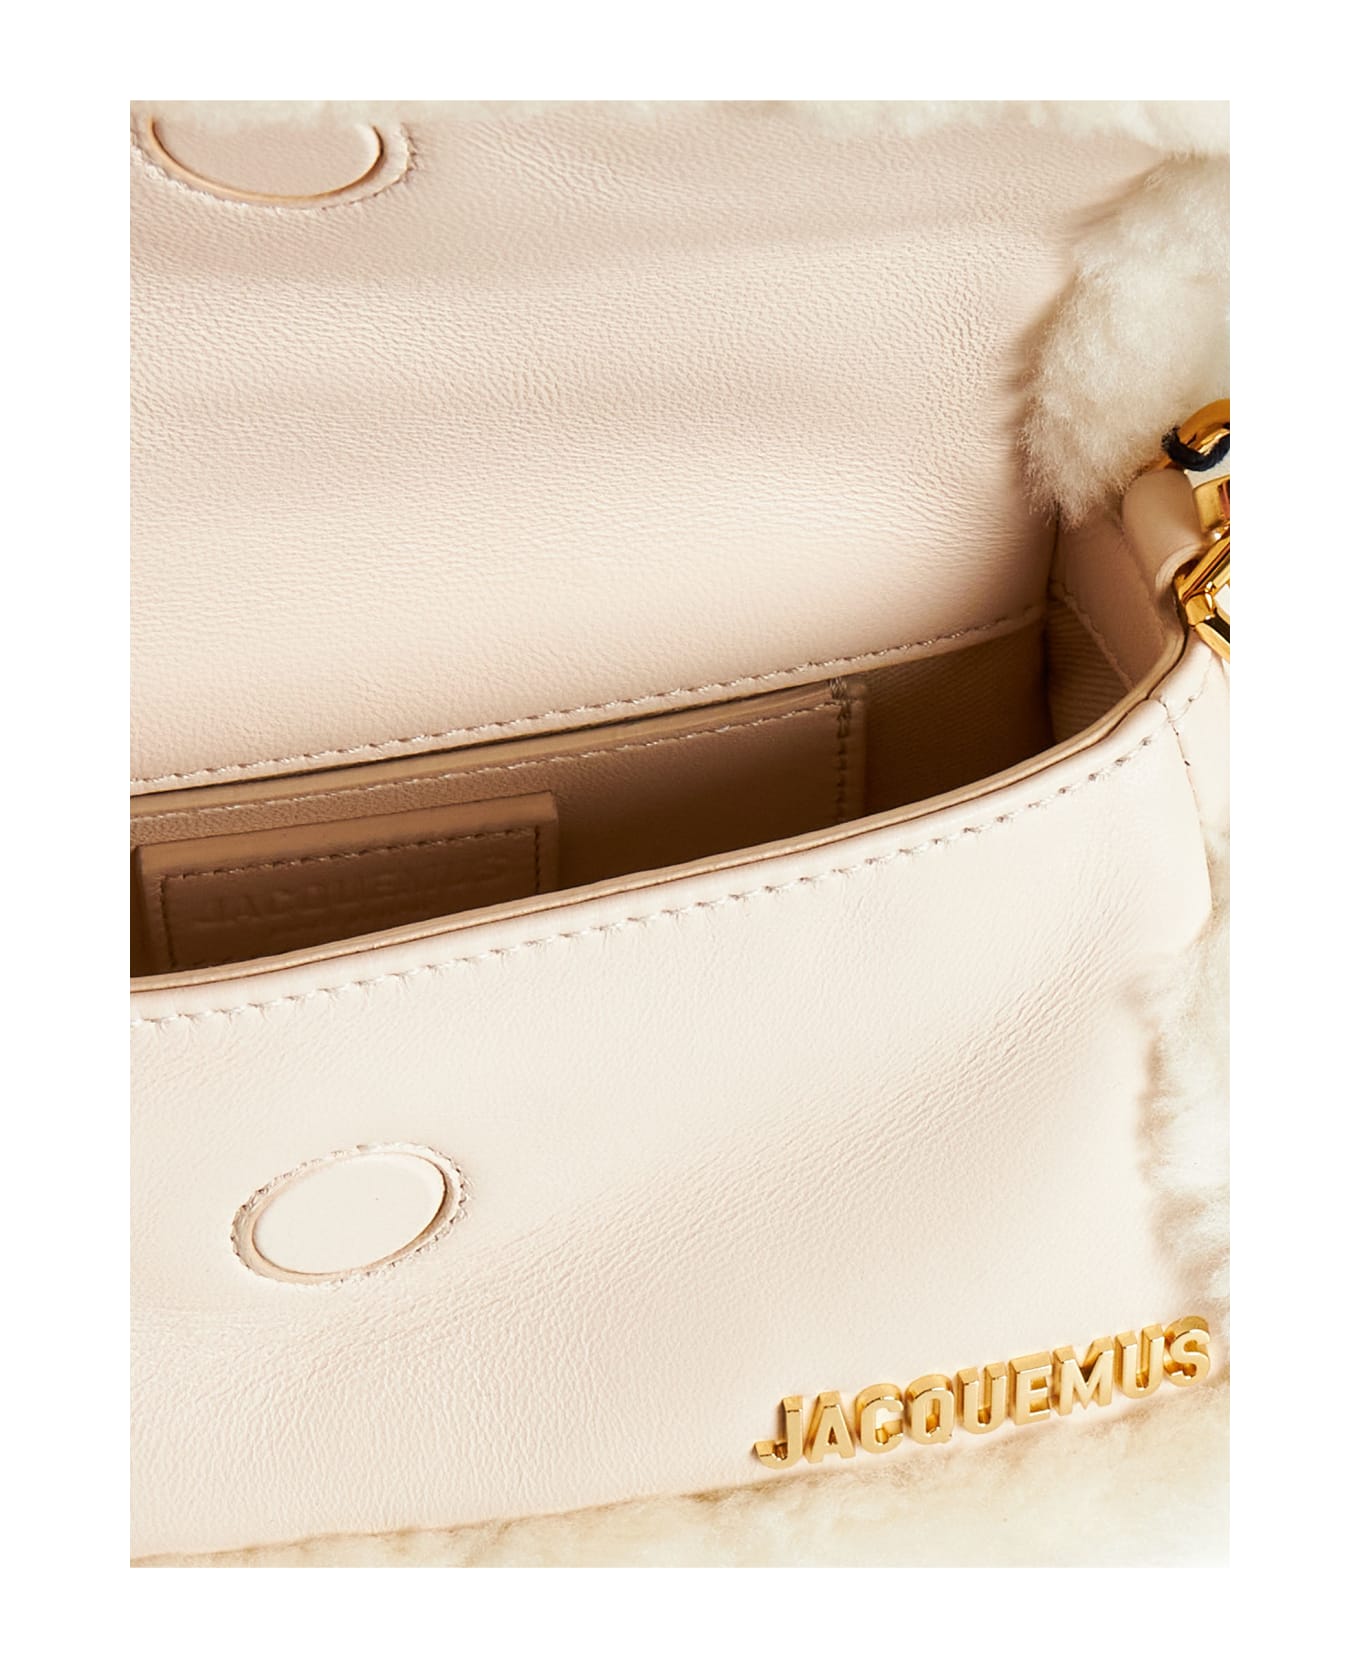 Jacquemus Le Petit Bambimou Bag - Light beige トートバッグ